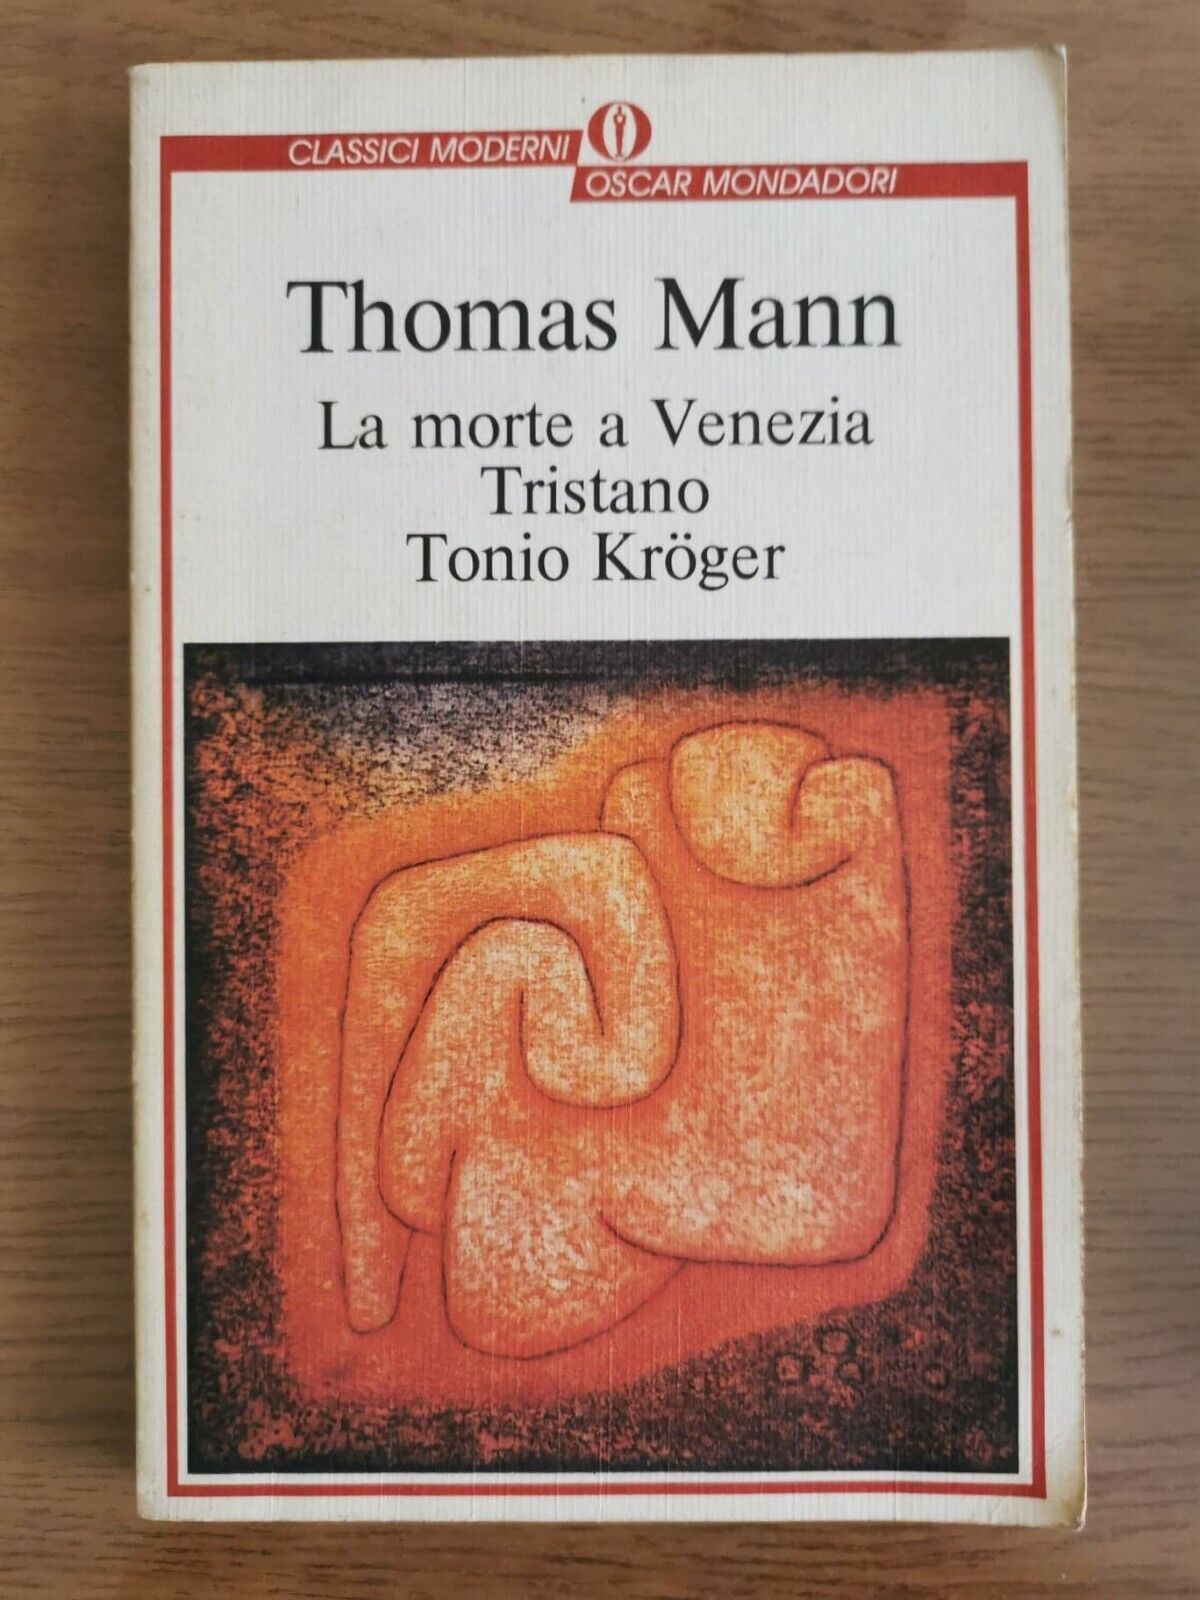 La morte a Venezia, Tristano, Tonio Kroger - T. Mann - Mondadori - 2000 - AR